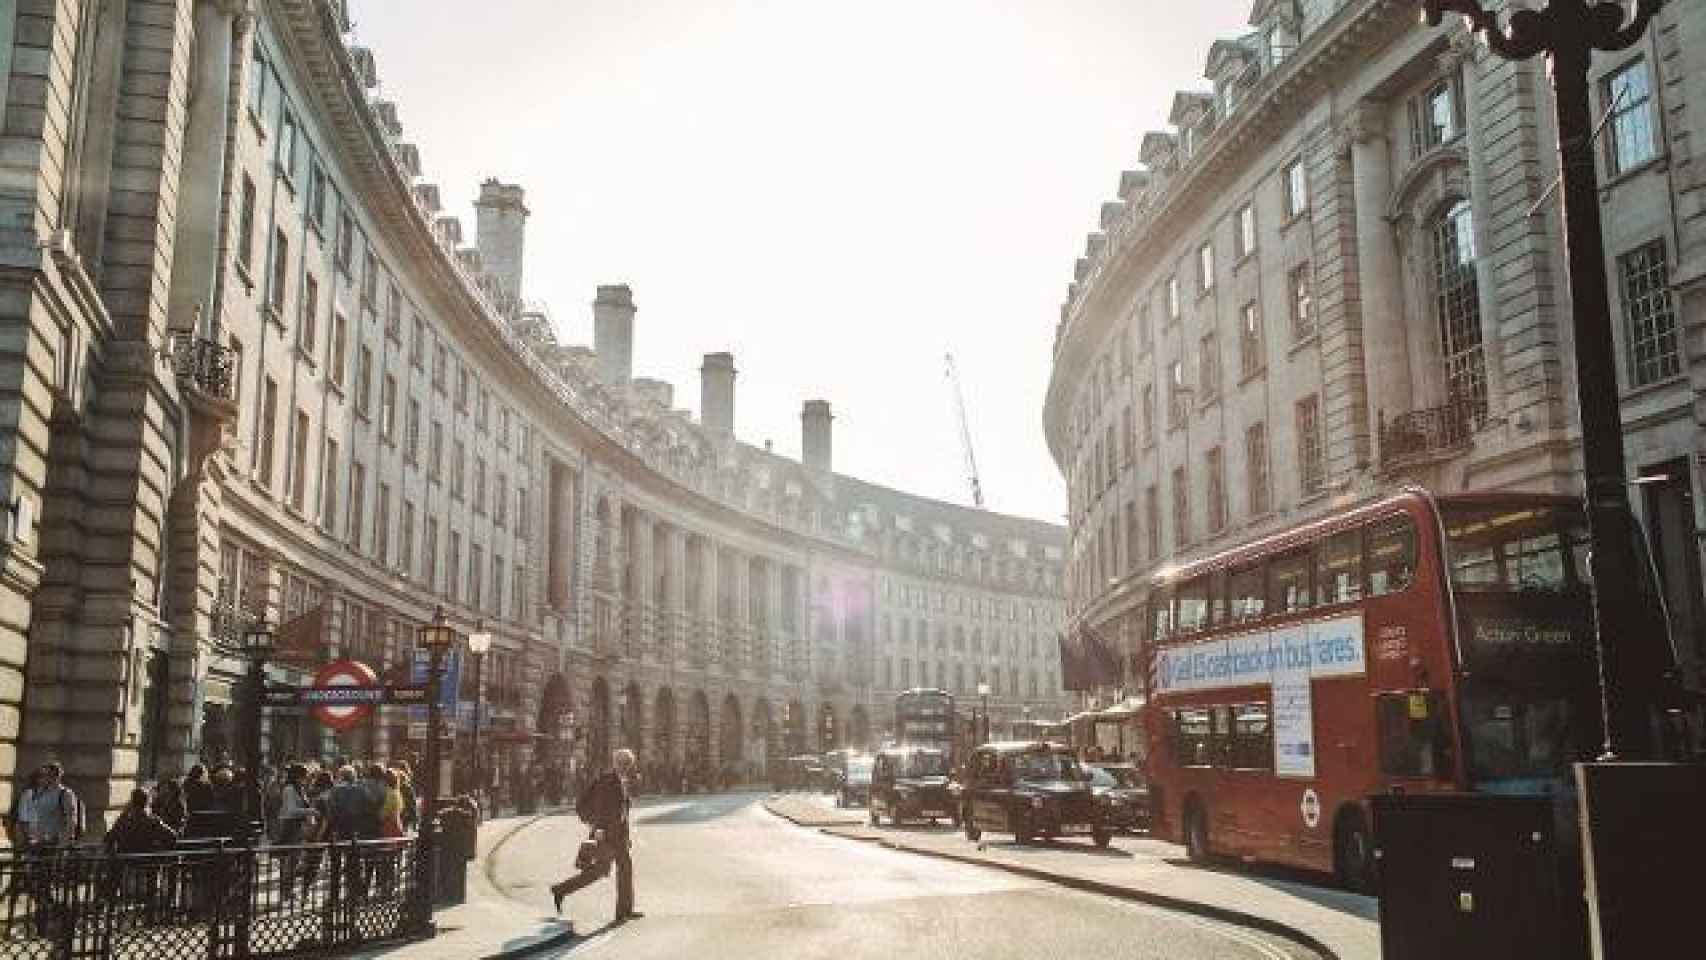 Vista actual de la Regent Street de Londres, donde losada vivió.